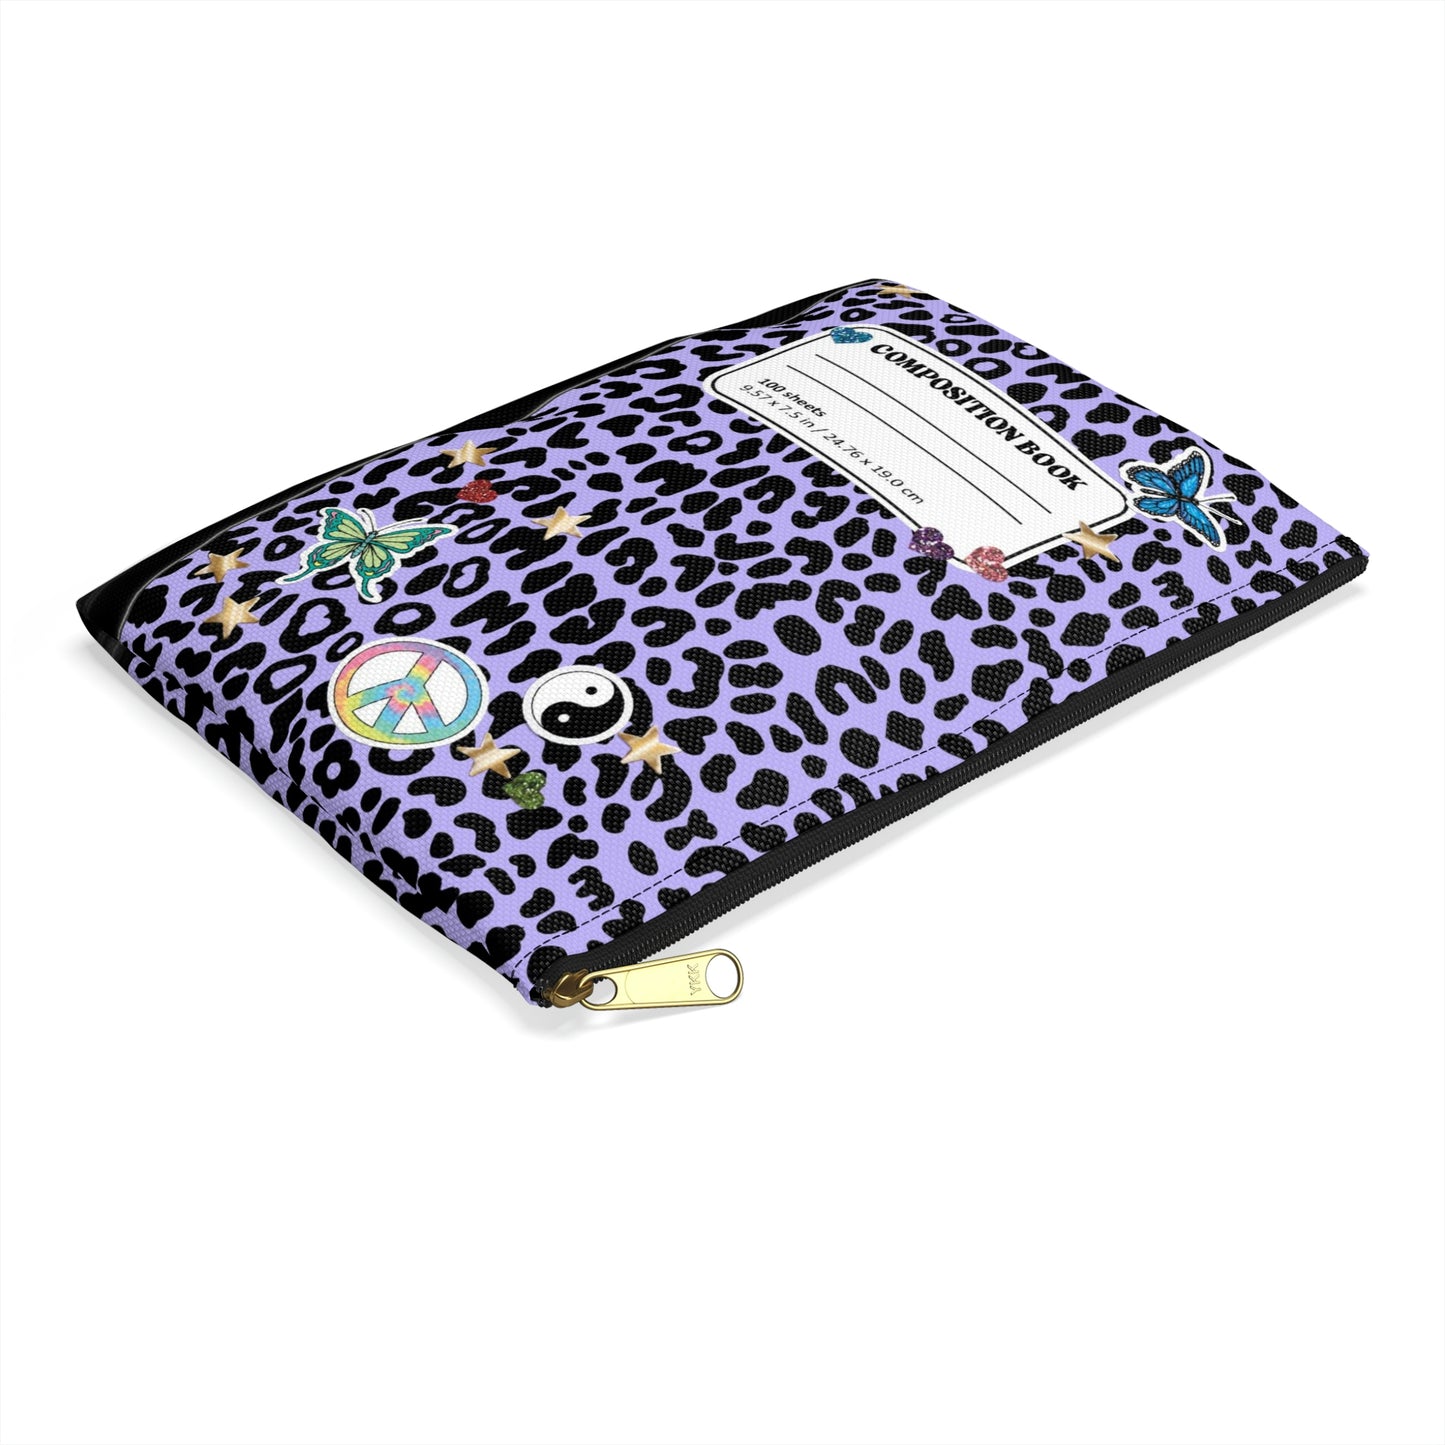 Leopard 90s Composition Book Pouch - Purple